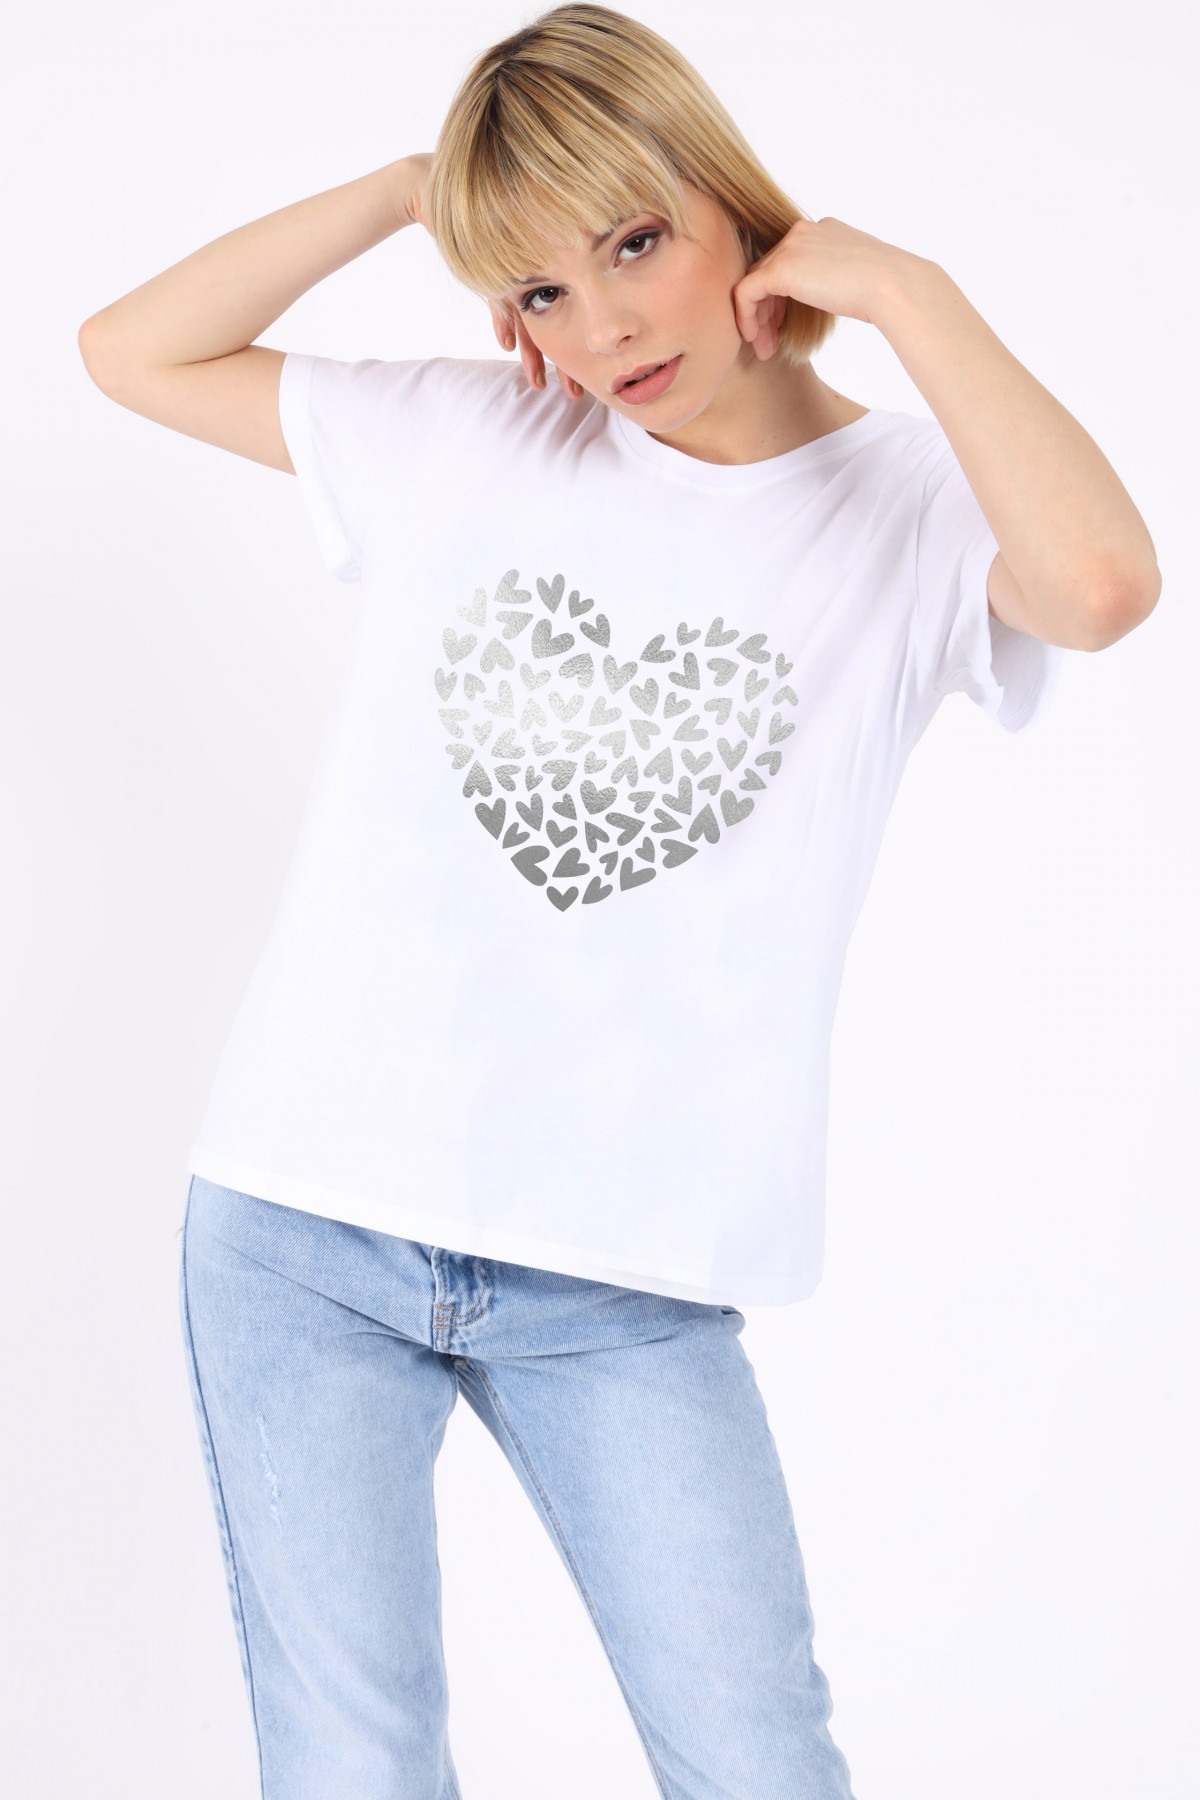 Herz des Herz-T-Shirts